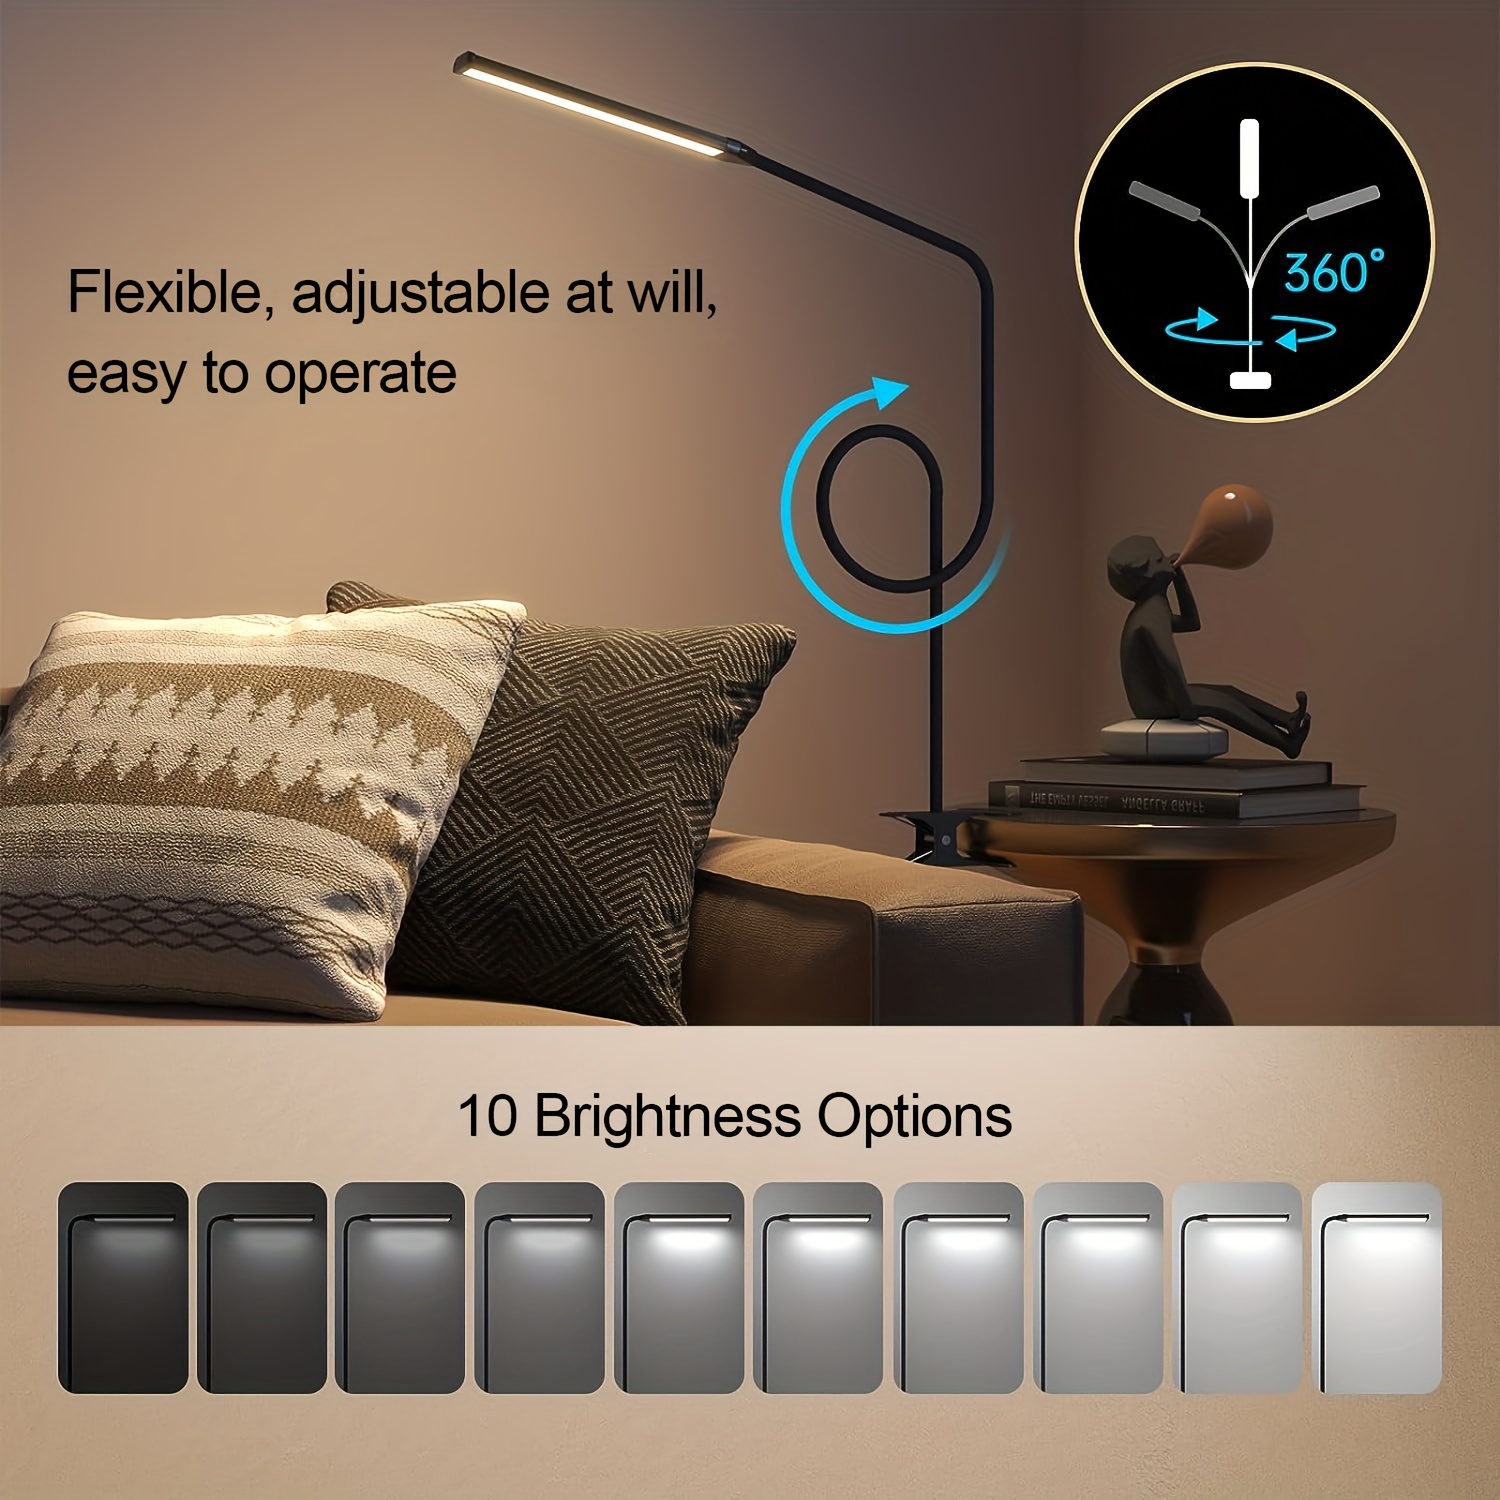 Lampe LED en aluminium flexible et PP léger alimentée par prise USB.  Branchez-la dans un port USB et les 5 diodes s'allument. - Objet  publicitaire